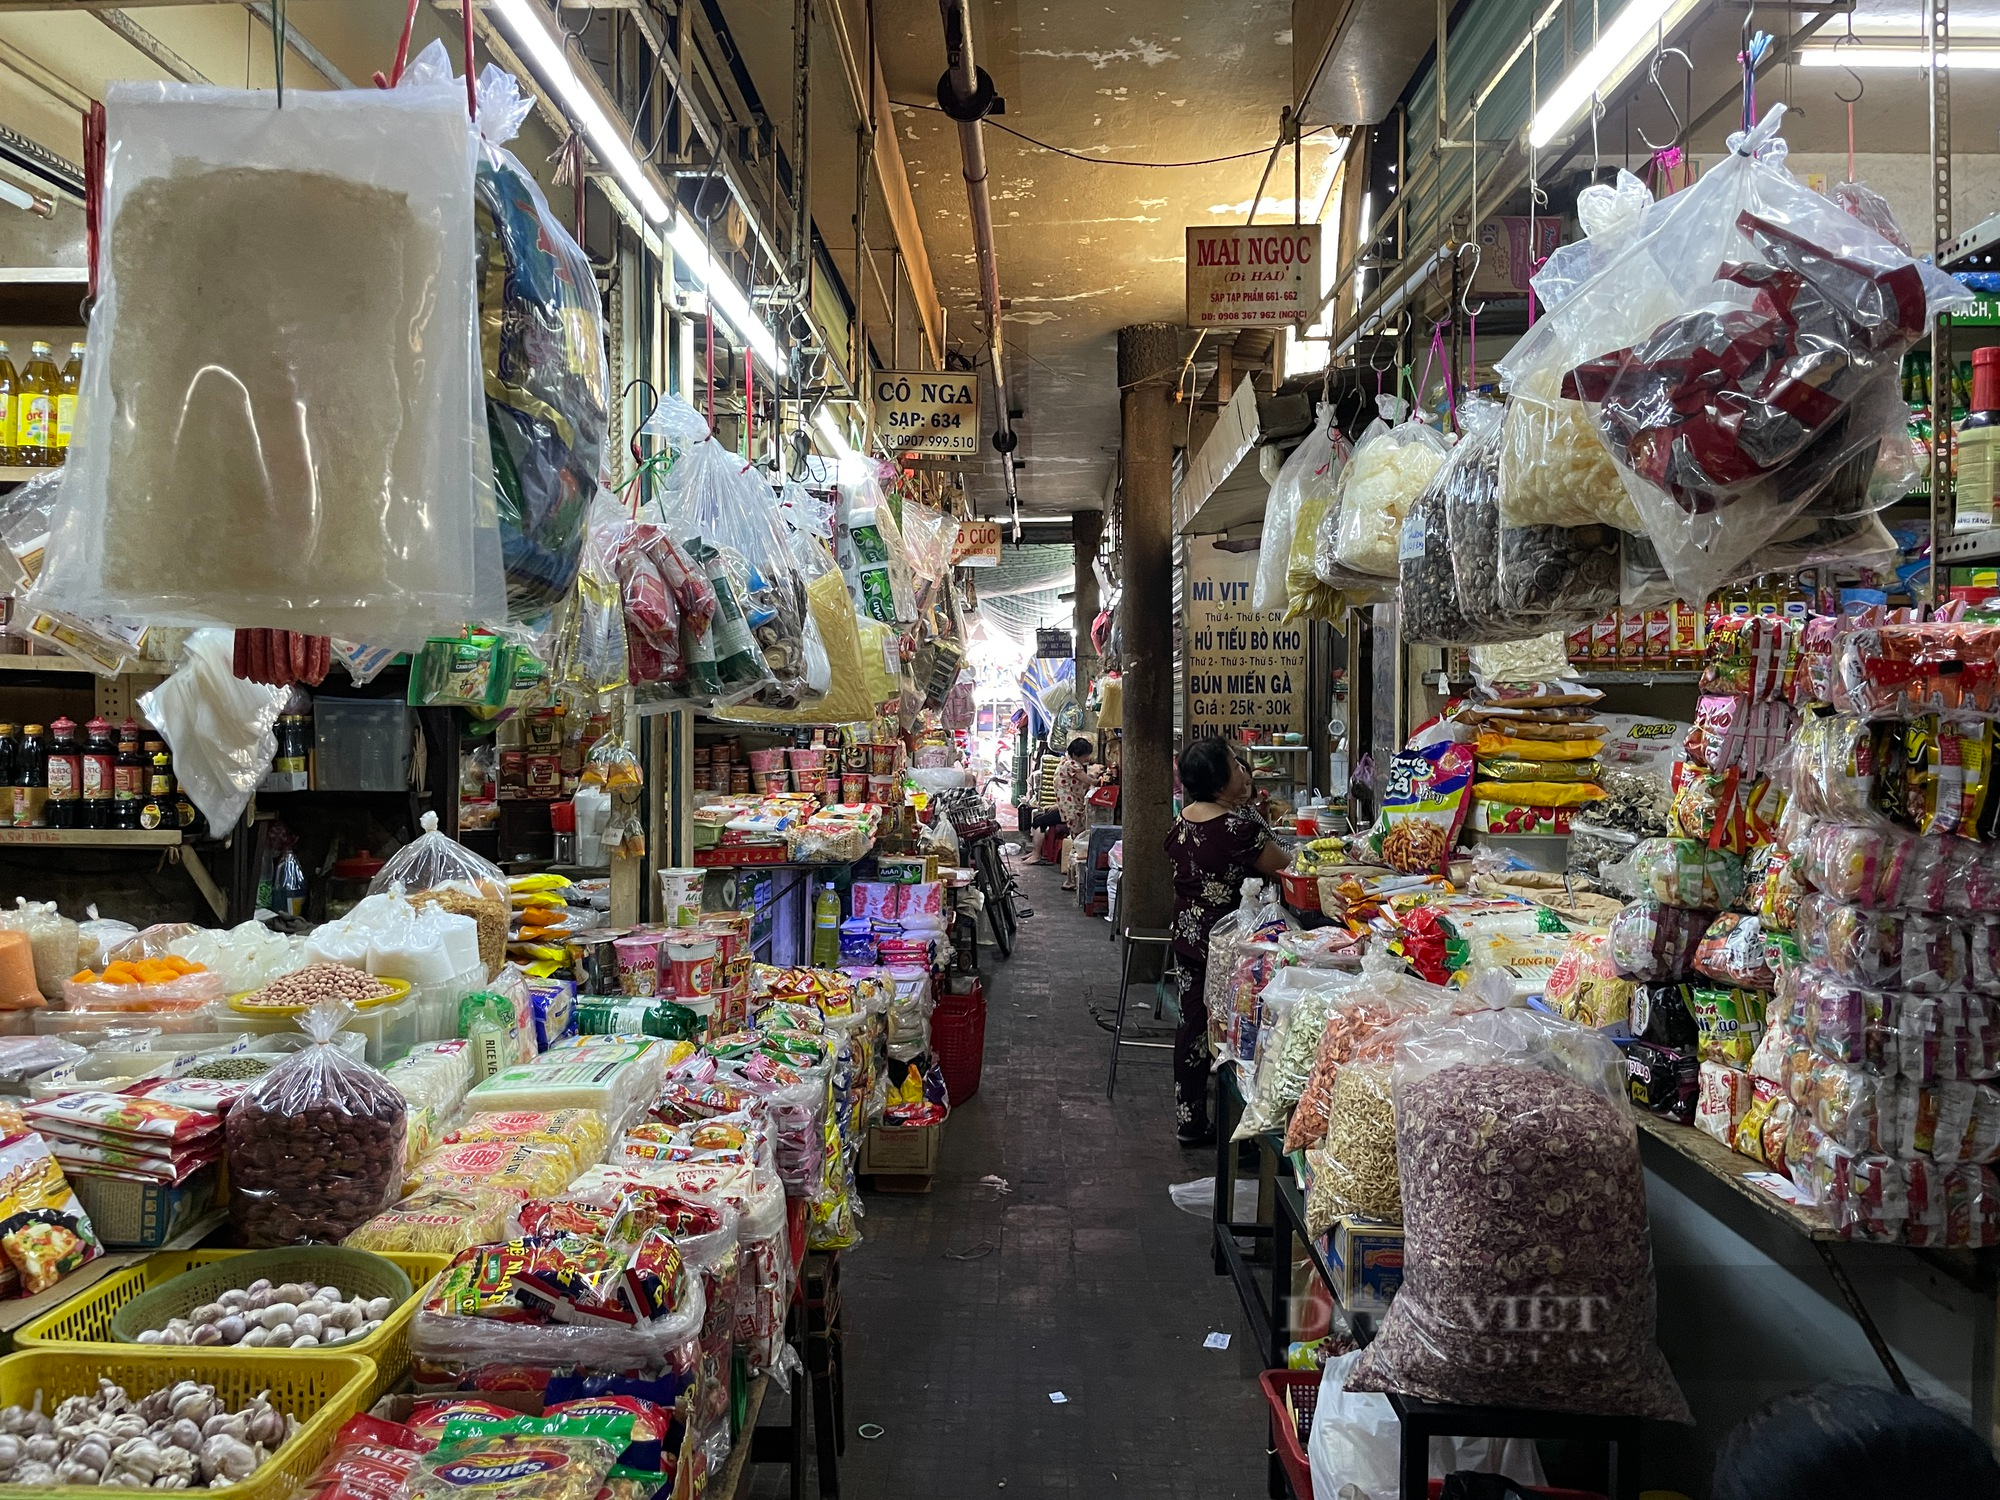 Tiểu thương chợ Sài Gòn xếp hàng dài chờ khách, chiều đóng cửa về sớm vì ế - Ảnh 2.